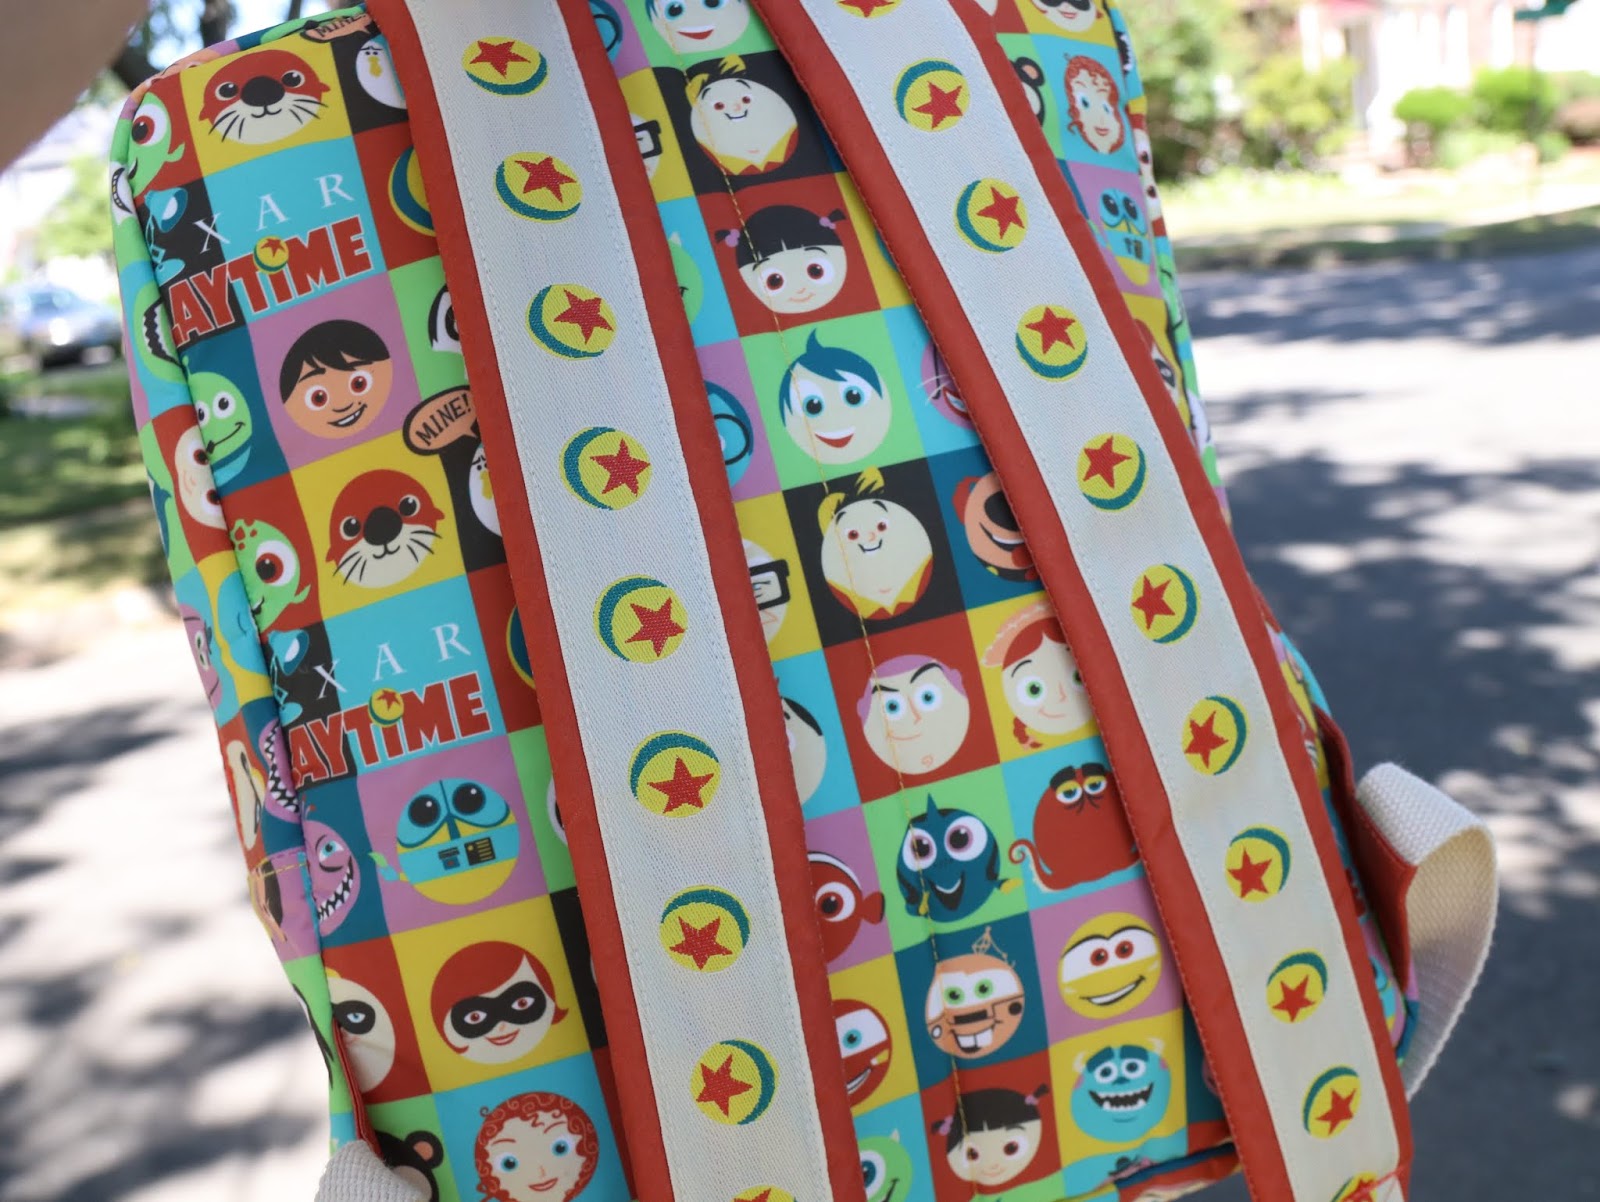  Pixar Playtime Backpack Tokyo DisneySea 